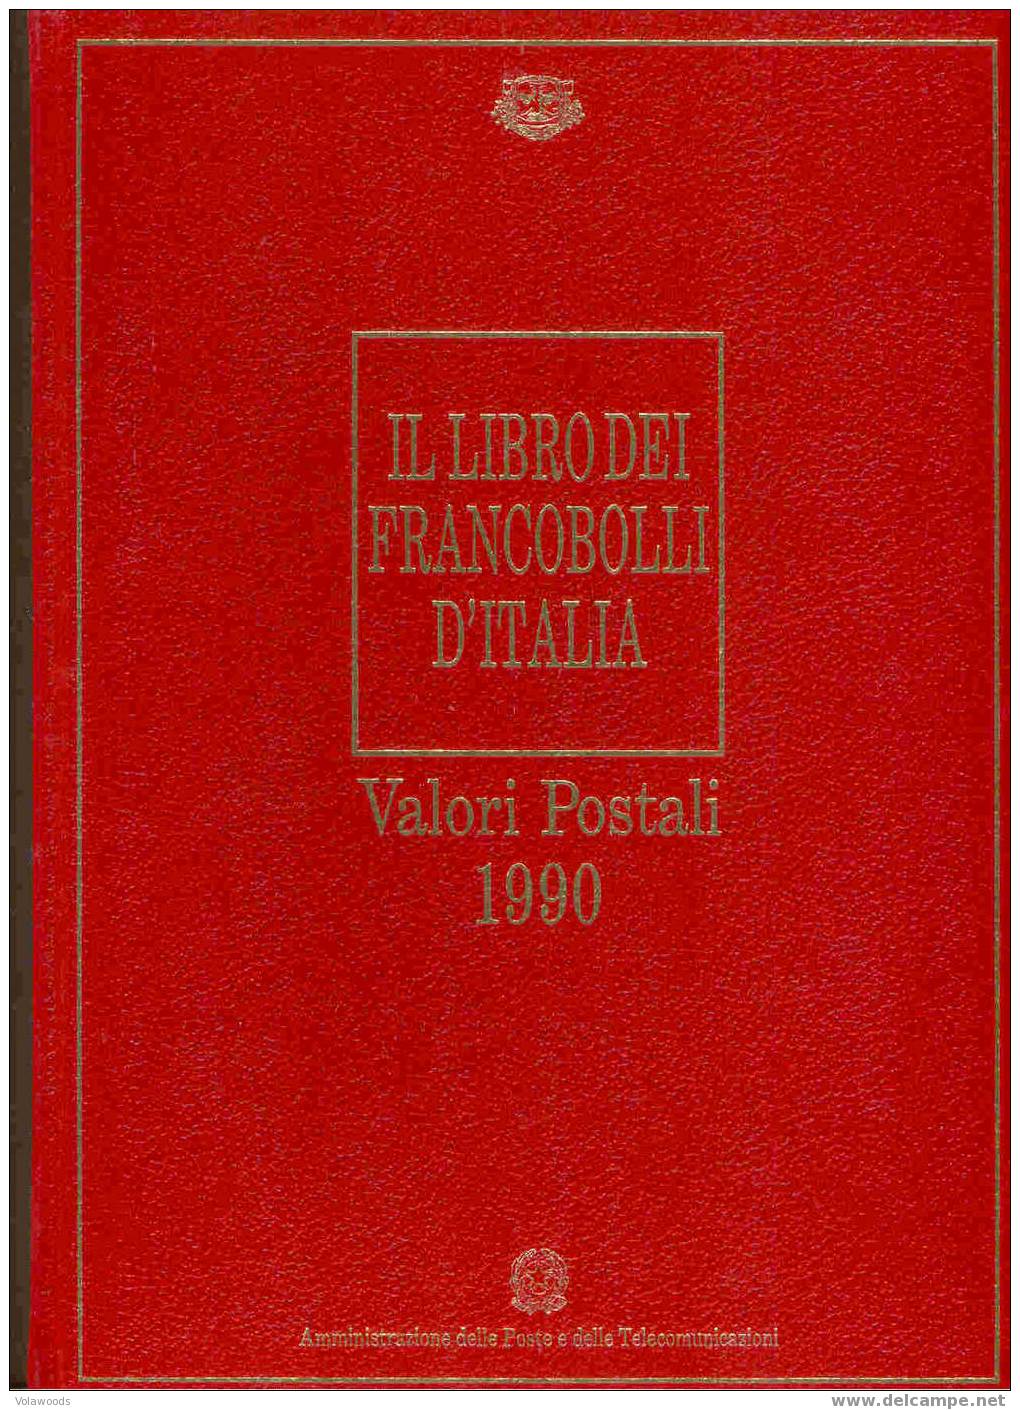 Italia - Libro Dei Francobolli 1990 - Annata Completa Francobolli/libretti/foglietti - Années Complètes